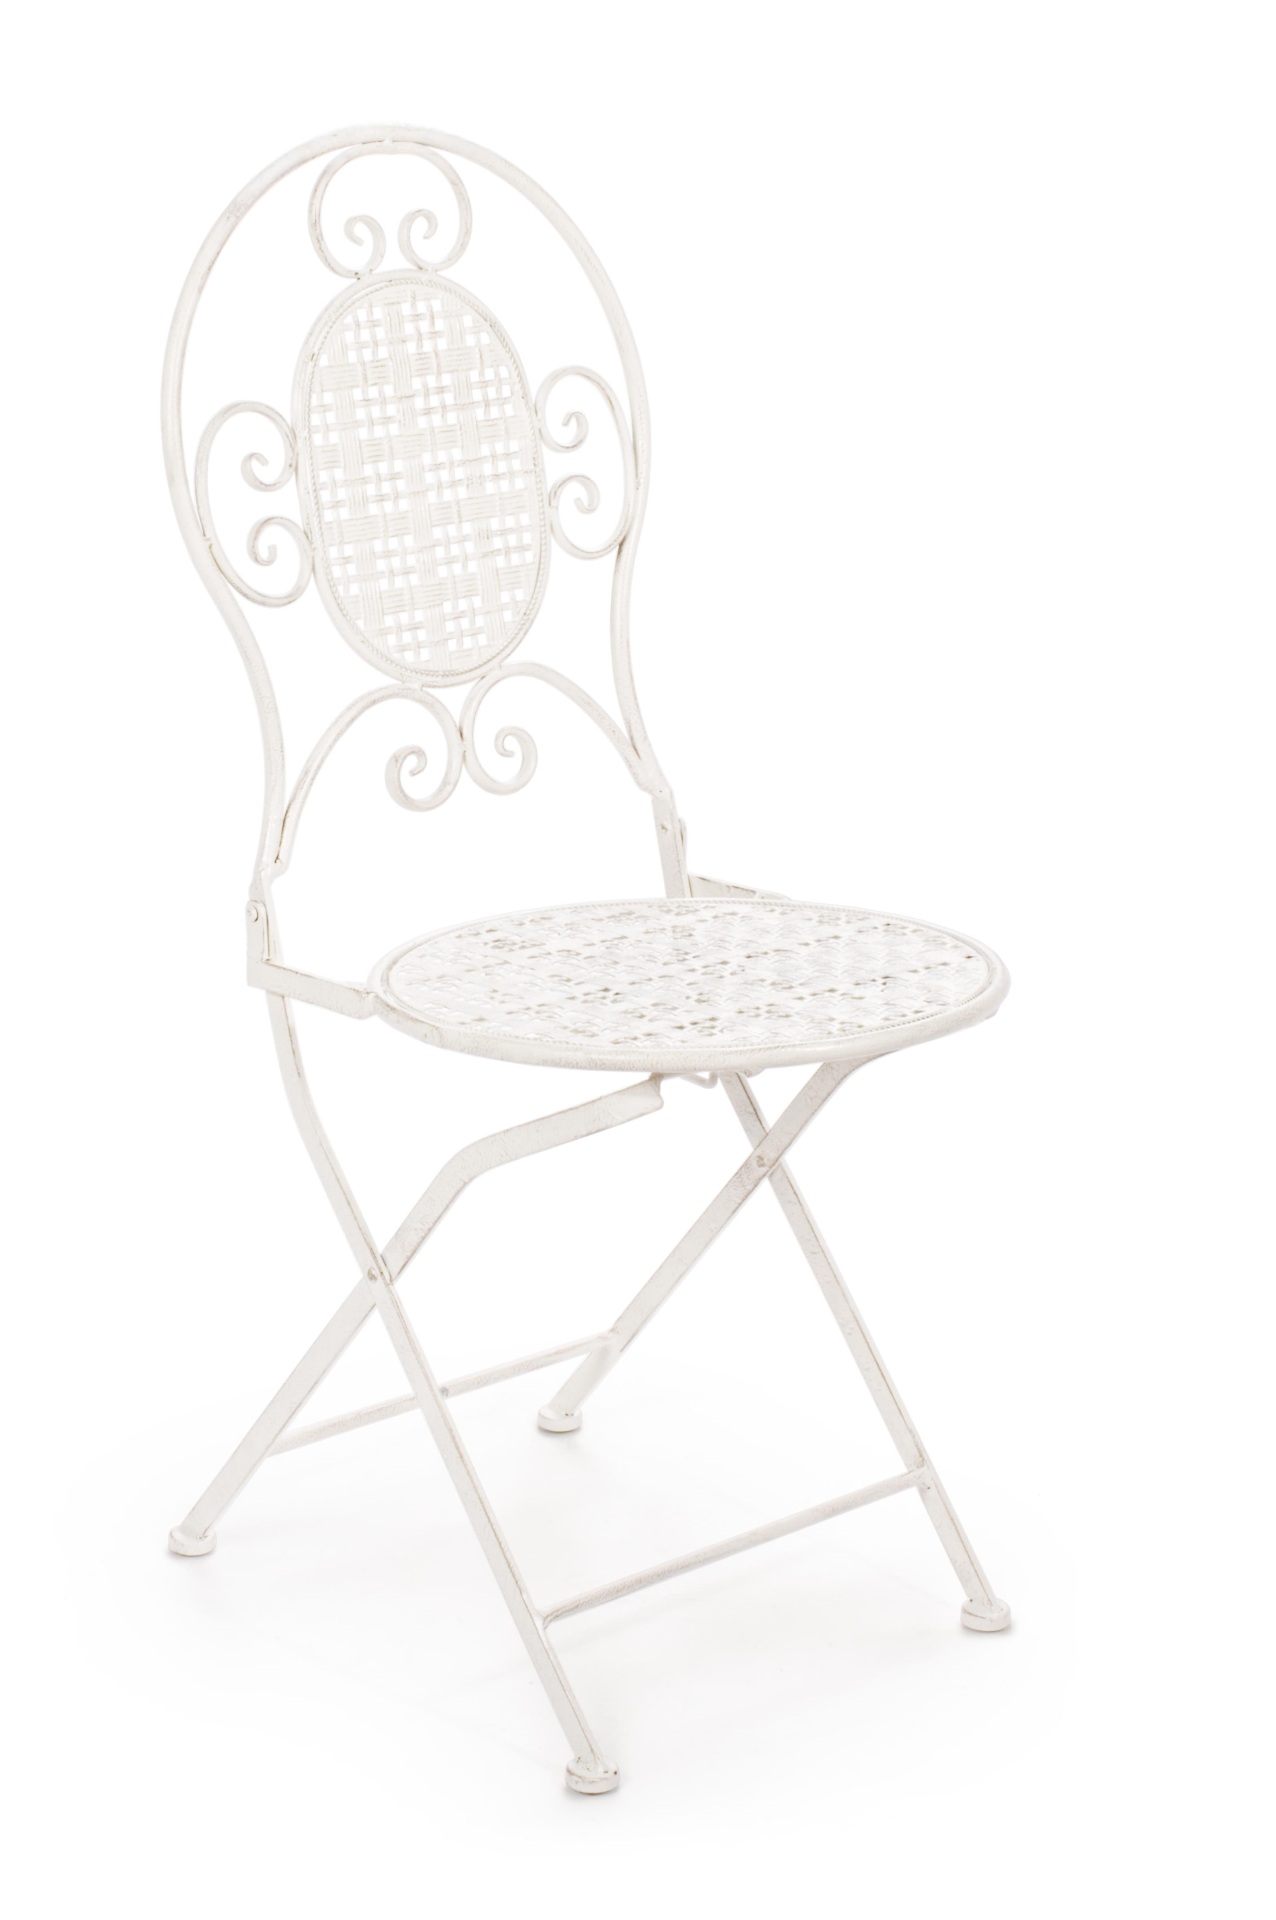 Der Stuhl Emily überzeugt mit seinem klassischen Design. Gefertigt wurde der Stuhl aus Metall, welches einen weißen Farbton besitzt. Die Sitzhöhe beträgt 46 cm.